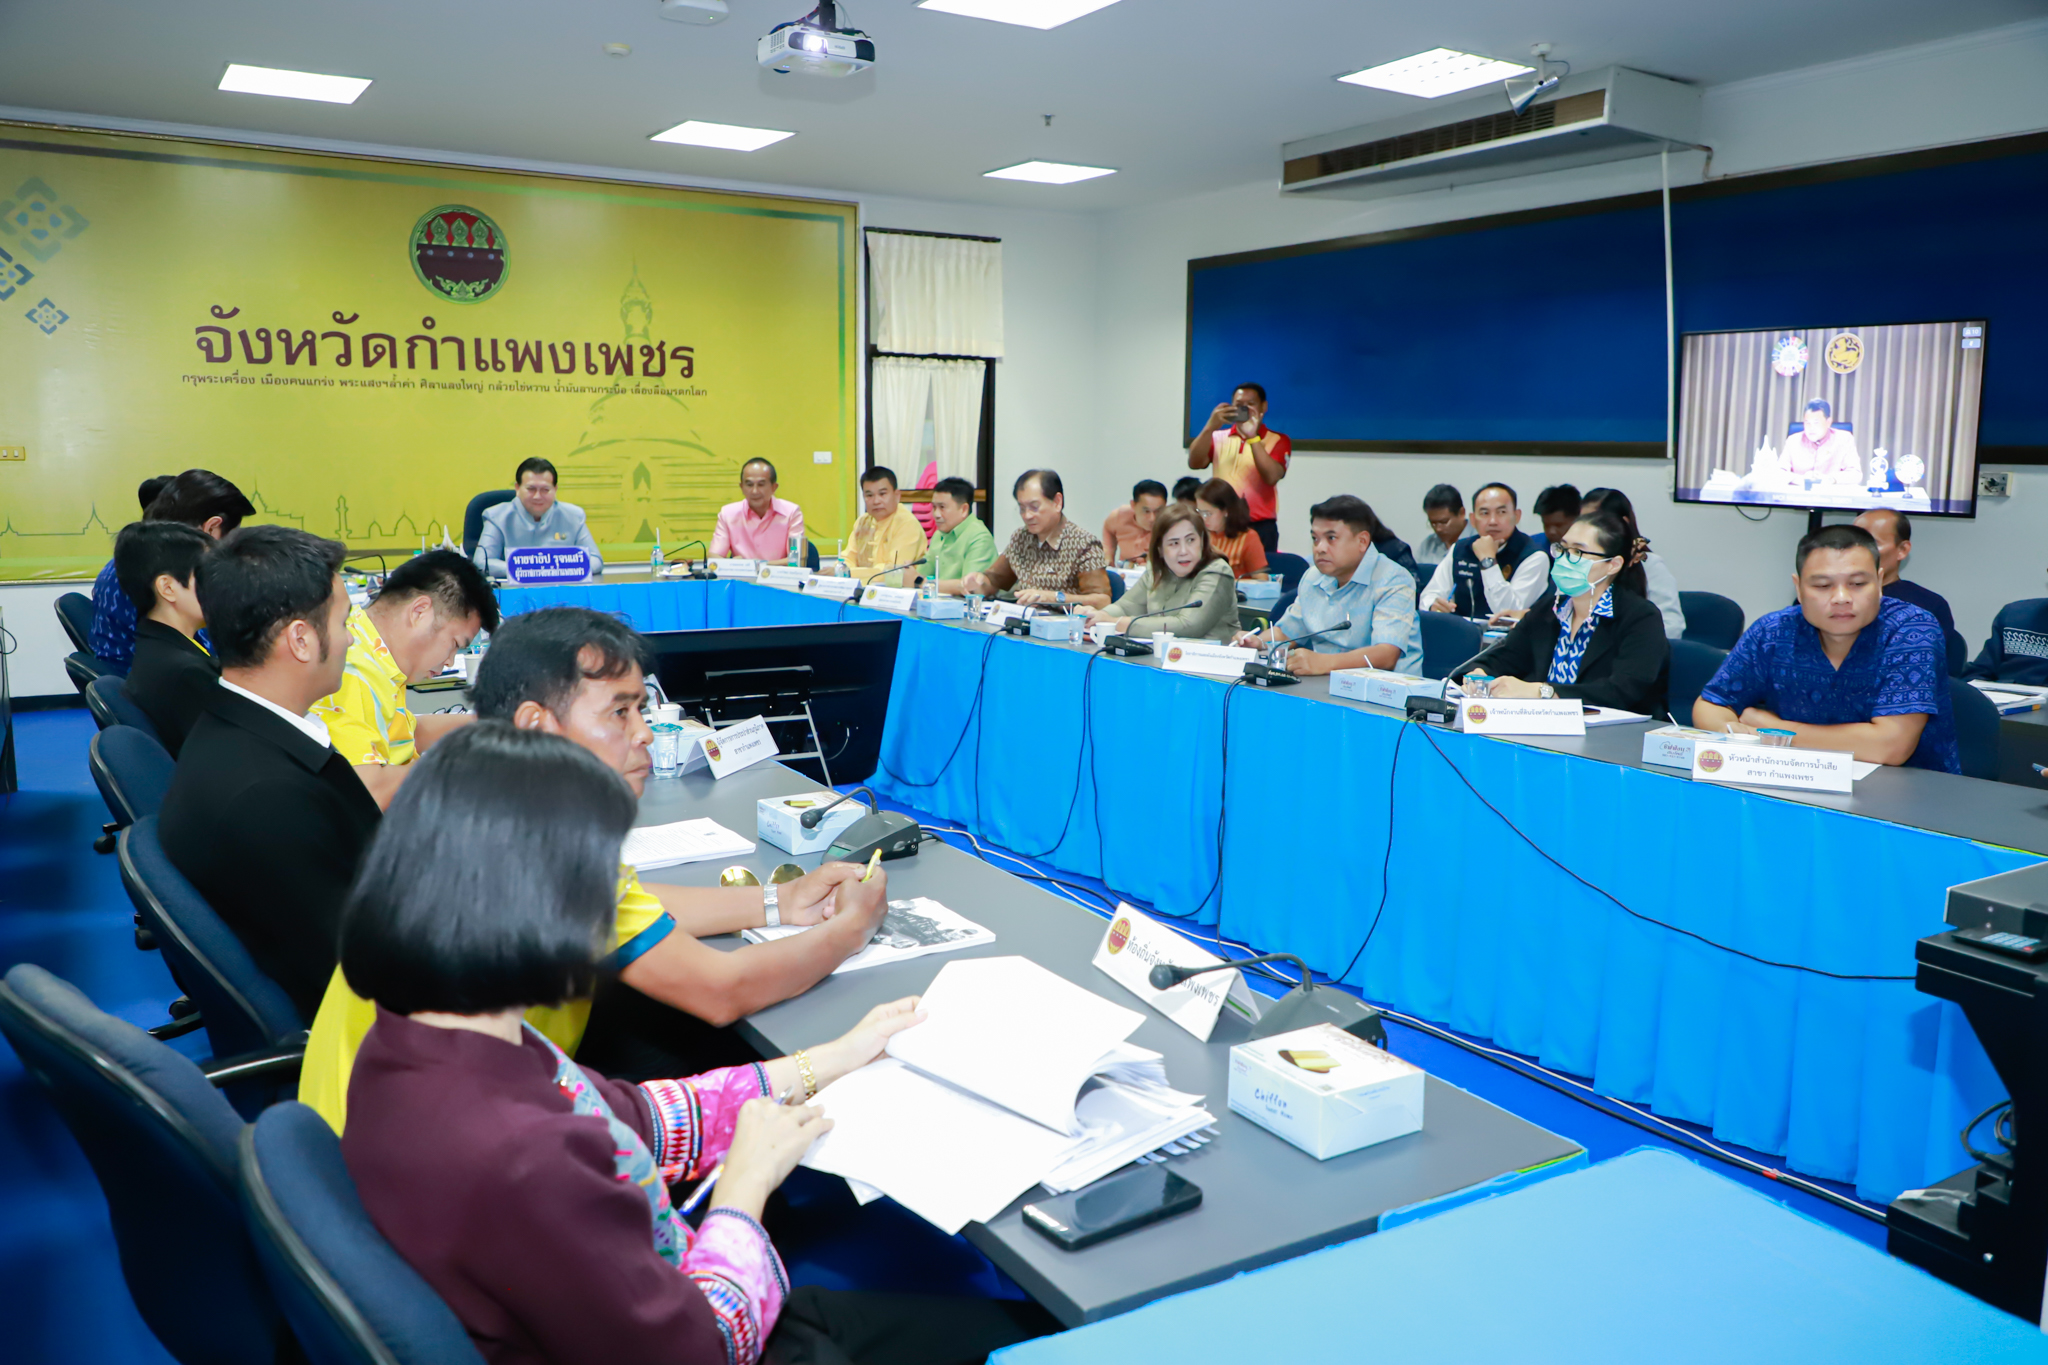 จังหวัดกำแพงเพชร ร่วมประชุมขับเคลื่อนและติดตามนโยบายของรัฐบาลและภารกิจสำคัญของปลัดกระทรวงมหาดไทย ผ่านระบบวีดิทัศน์ทางไกล VCS